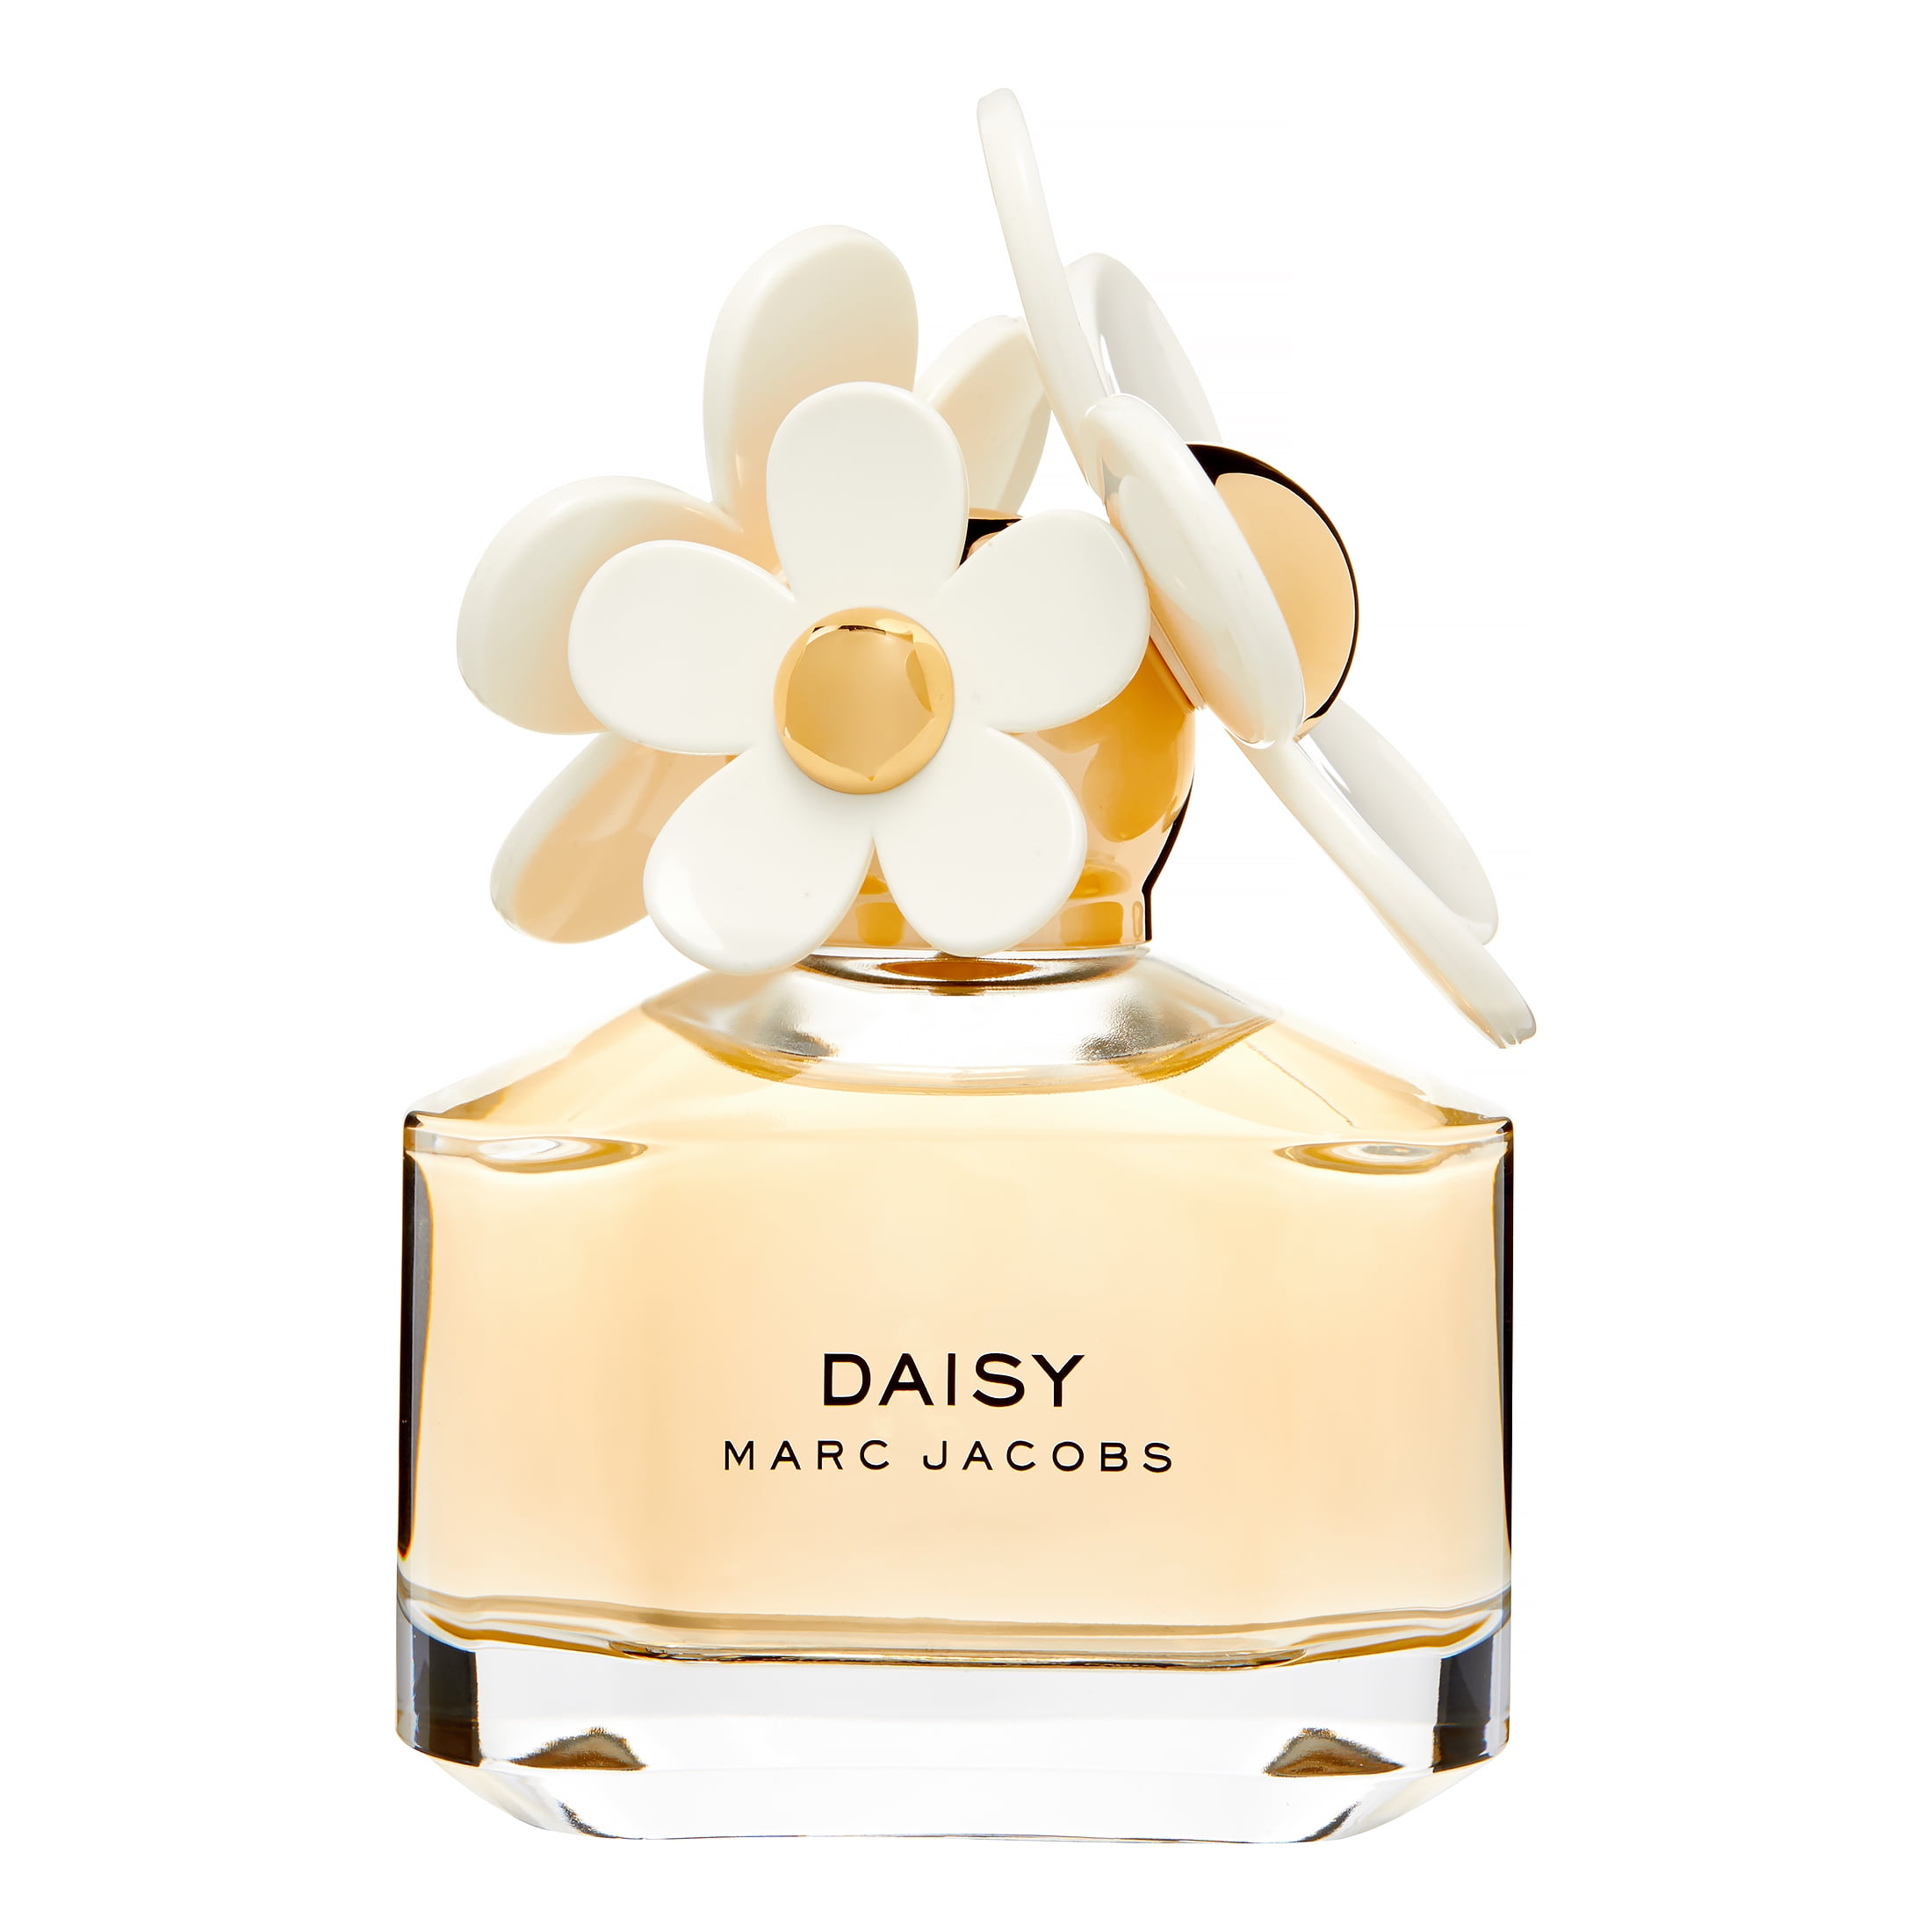 Marc Jacobs Daisy Eau De Toilette Perfume For Women 1 7 Oz Walmart Com